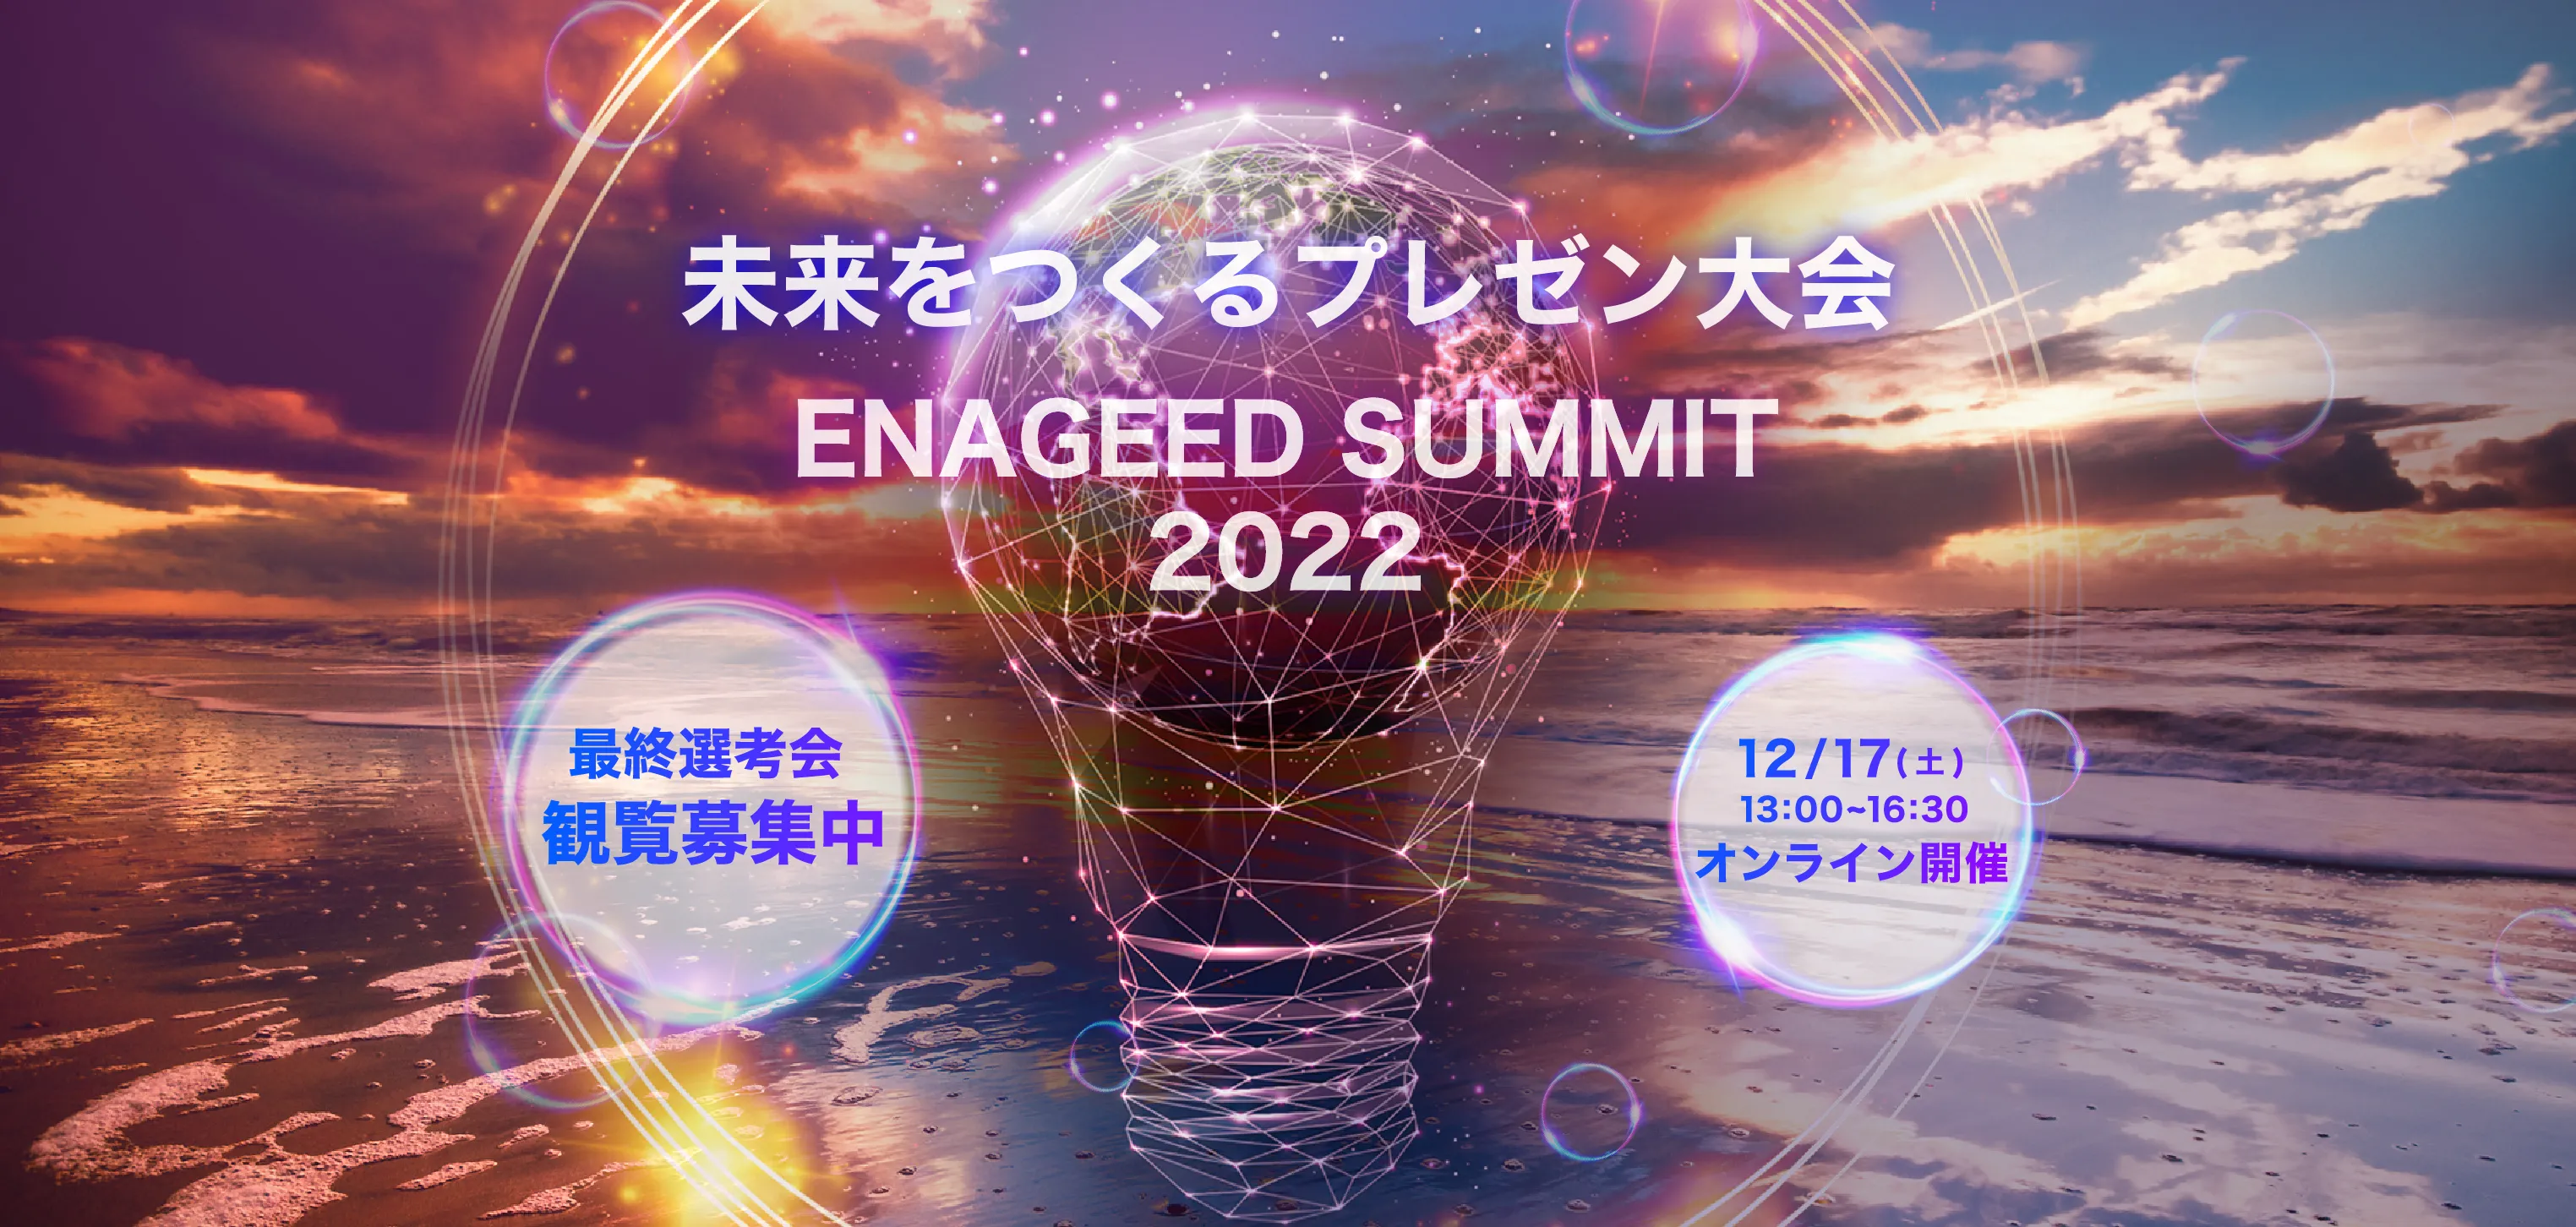 ENAGEED SUMMIT 2022 